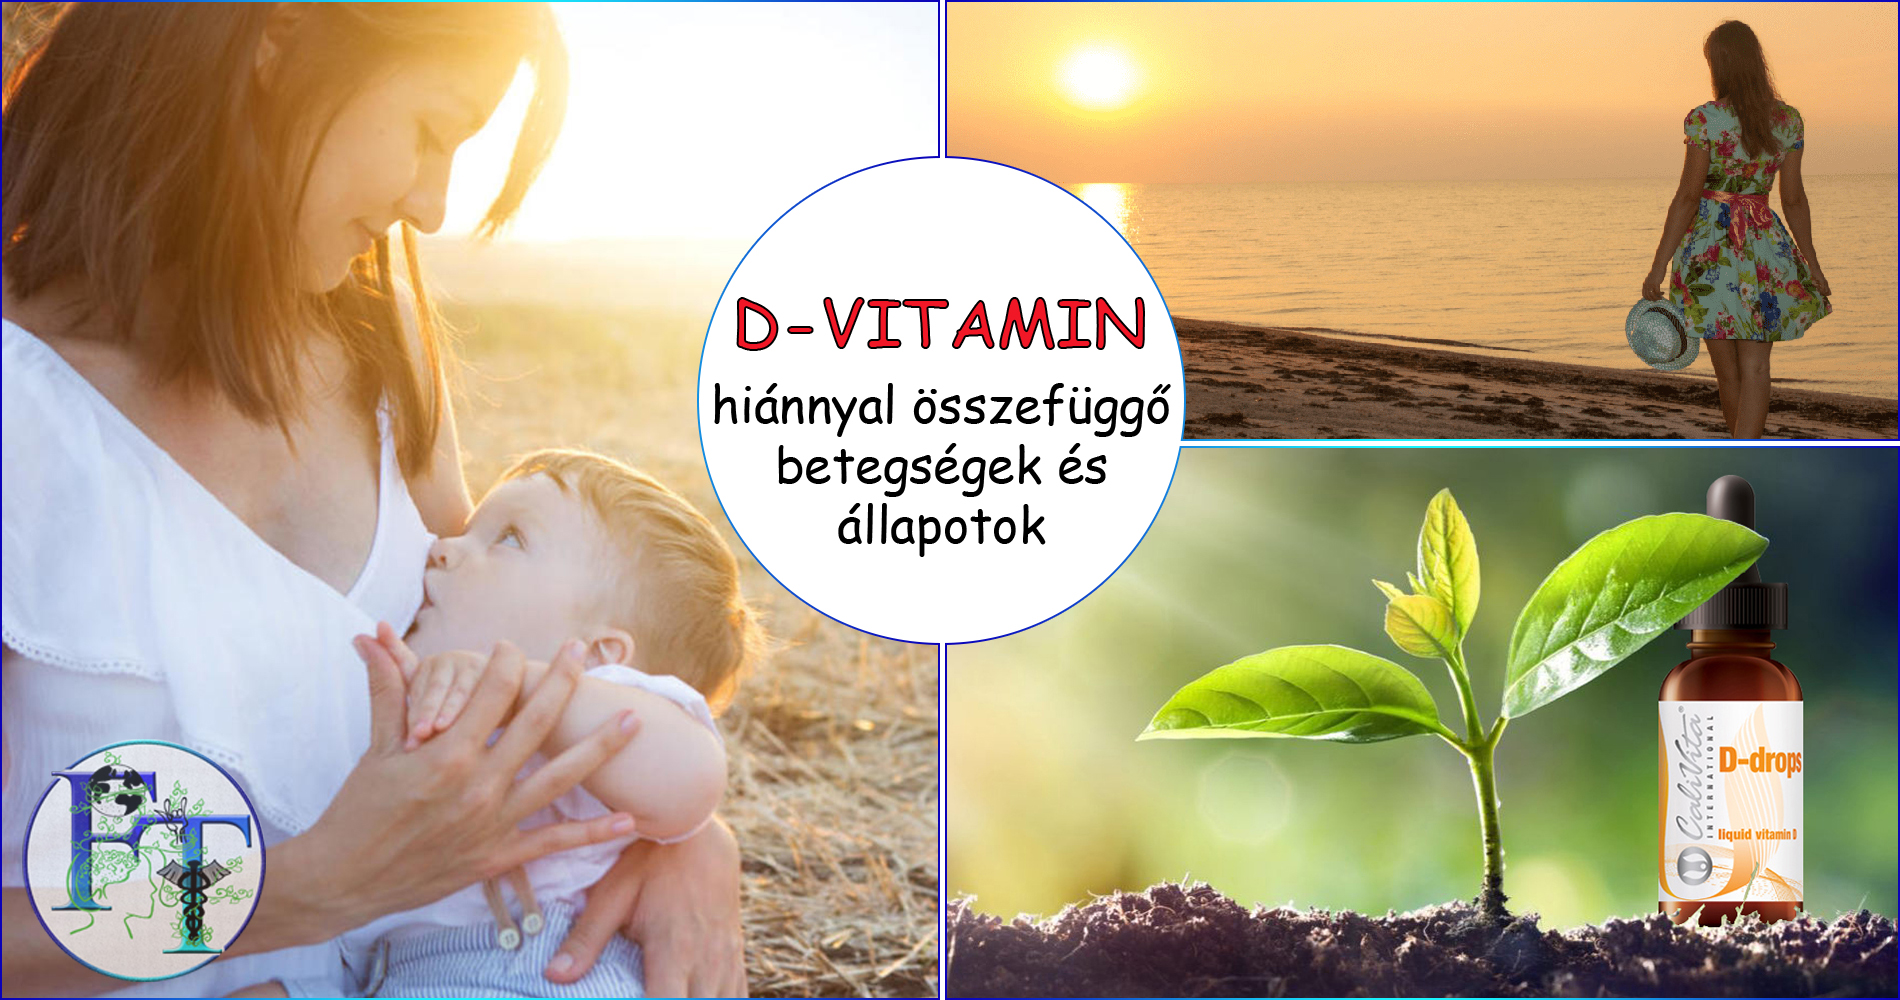 D vitamin hiánnyal összefüggő betegségek